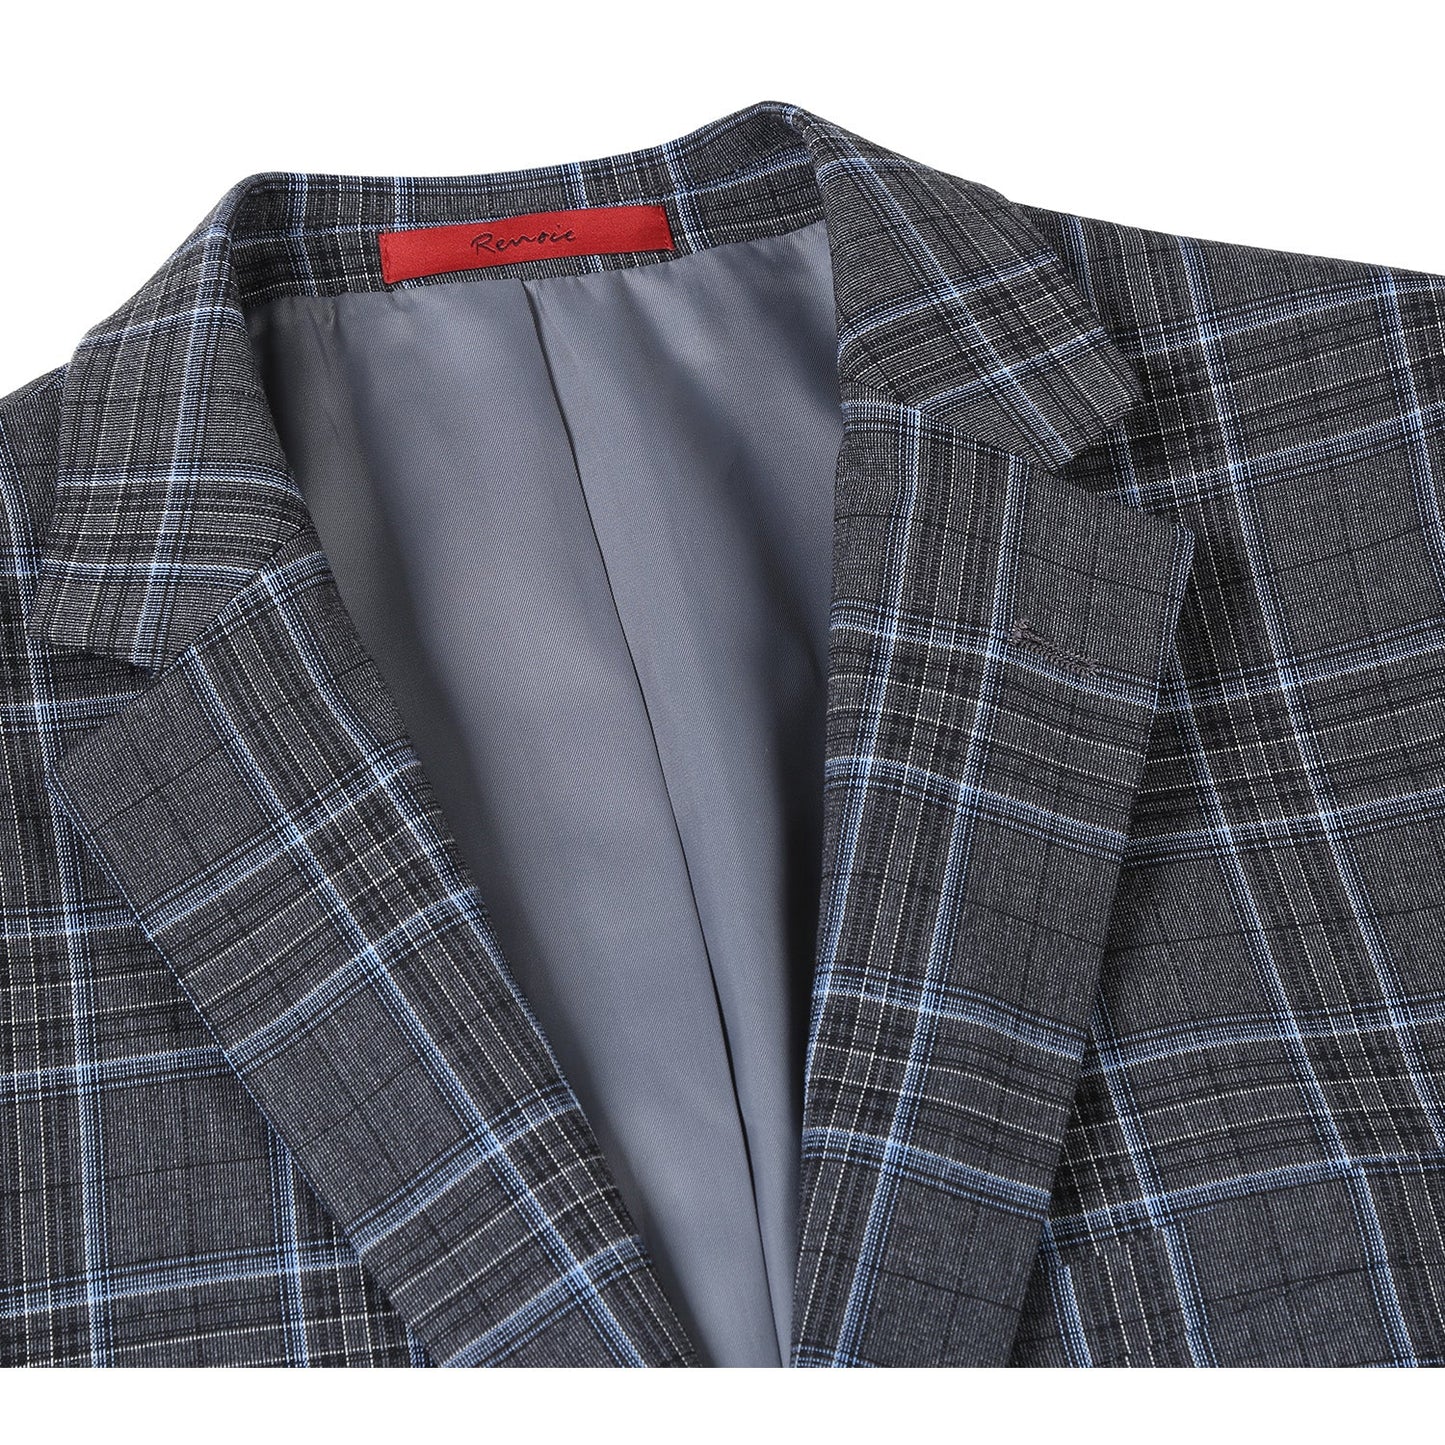 293-28 Men's Slim Fit Grey Plaid Suit